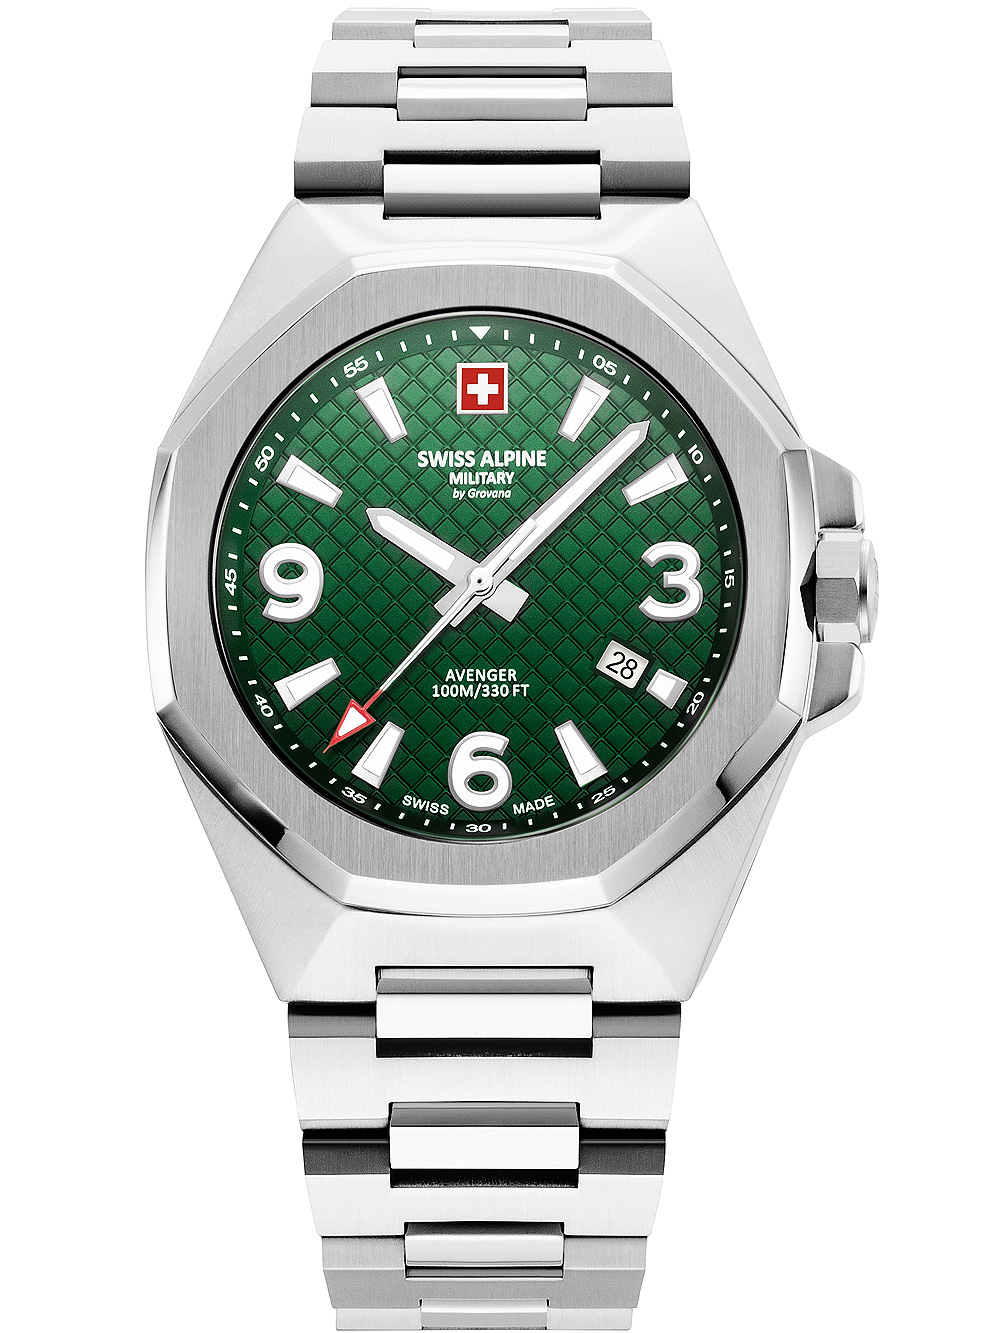 Pánské hodinky Swiss Alpine Military 7005.1134 Avenger